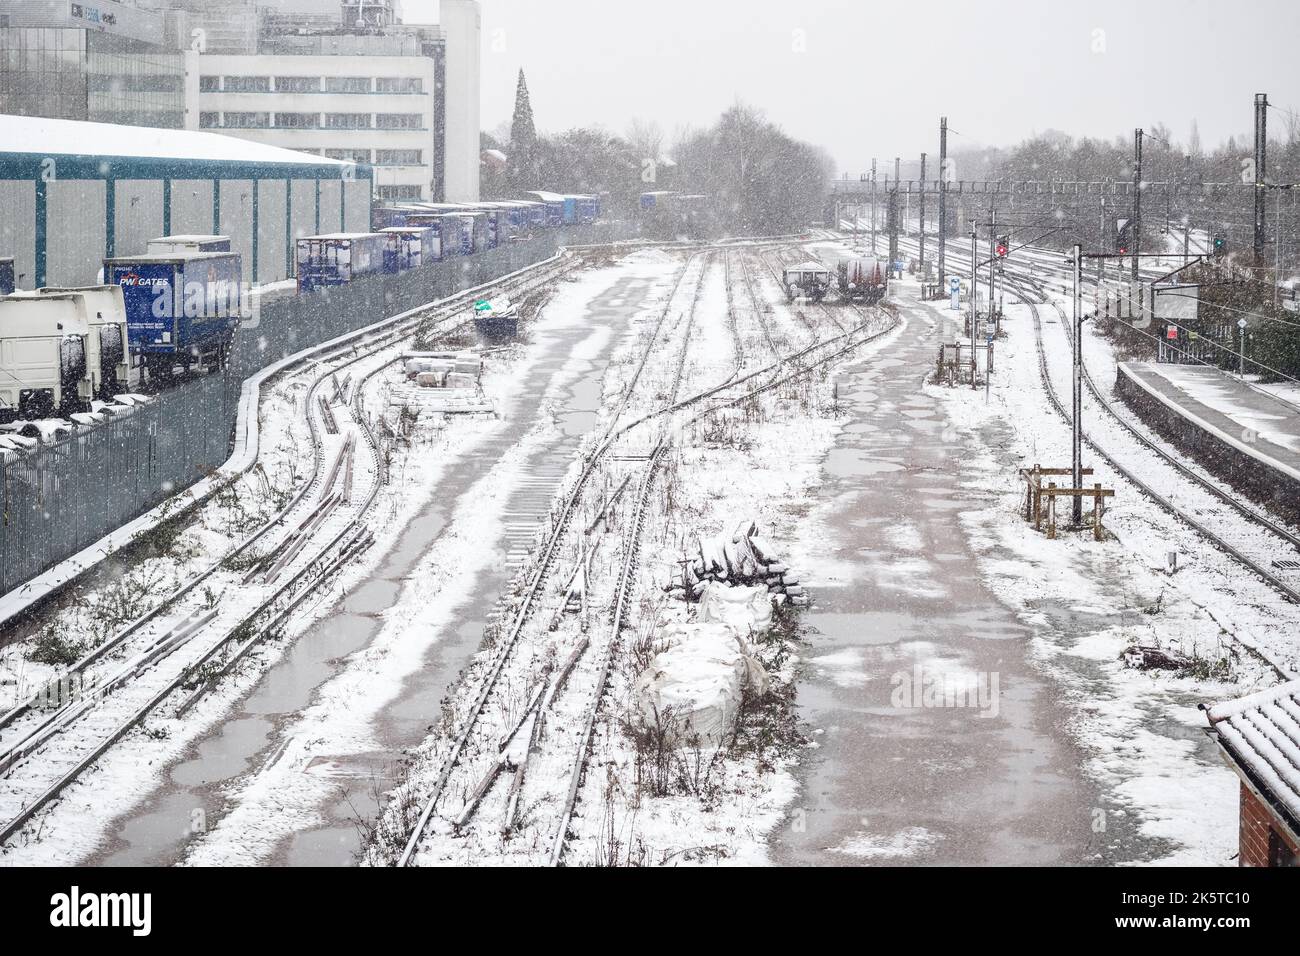 Welwyn Garden City, Royaume-Uni - 27 décembre 2017 - la gare de Welwyn Garden City et la zone industrielle de Broadwater sont couvertes de neige hivernale Banque D'Images